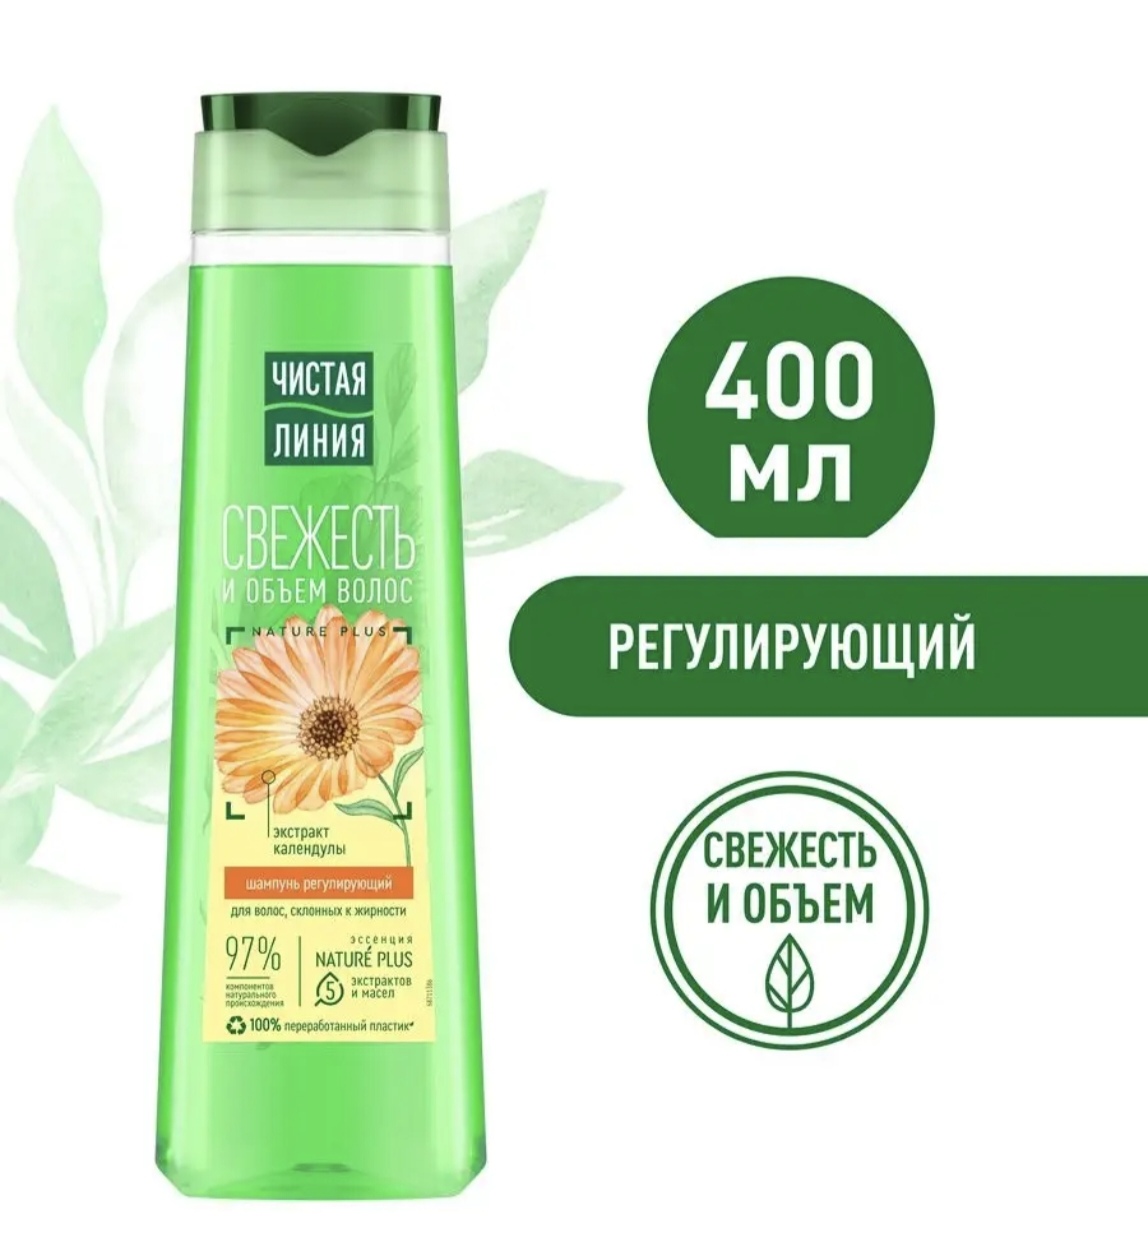 俄罗斯清洁线植物洗发400ml金盏花提取物针对油性发质清爽控油